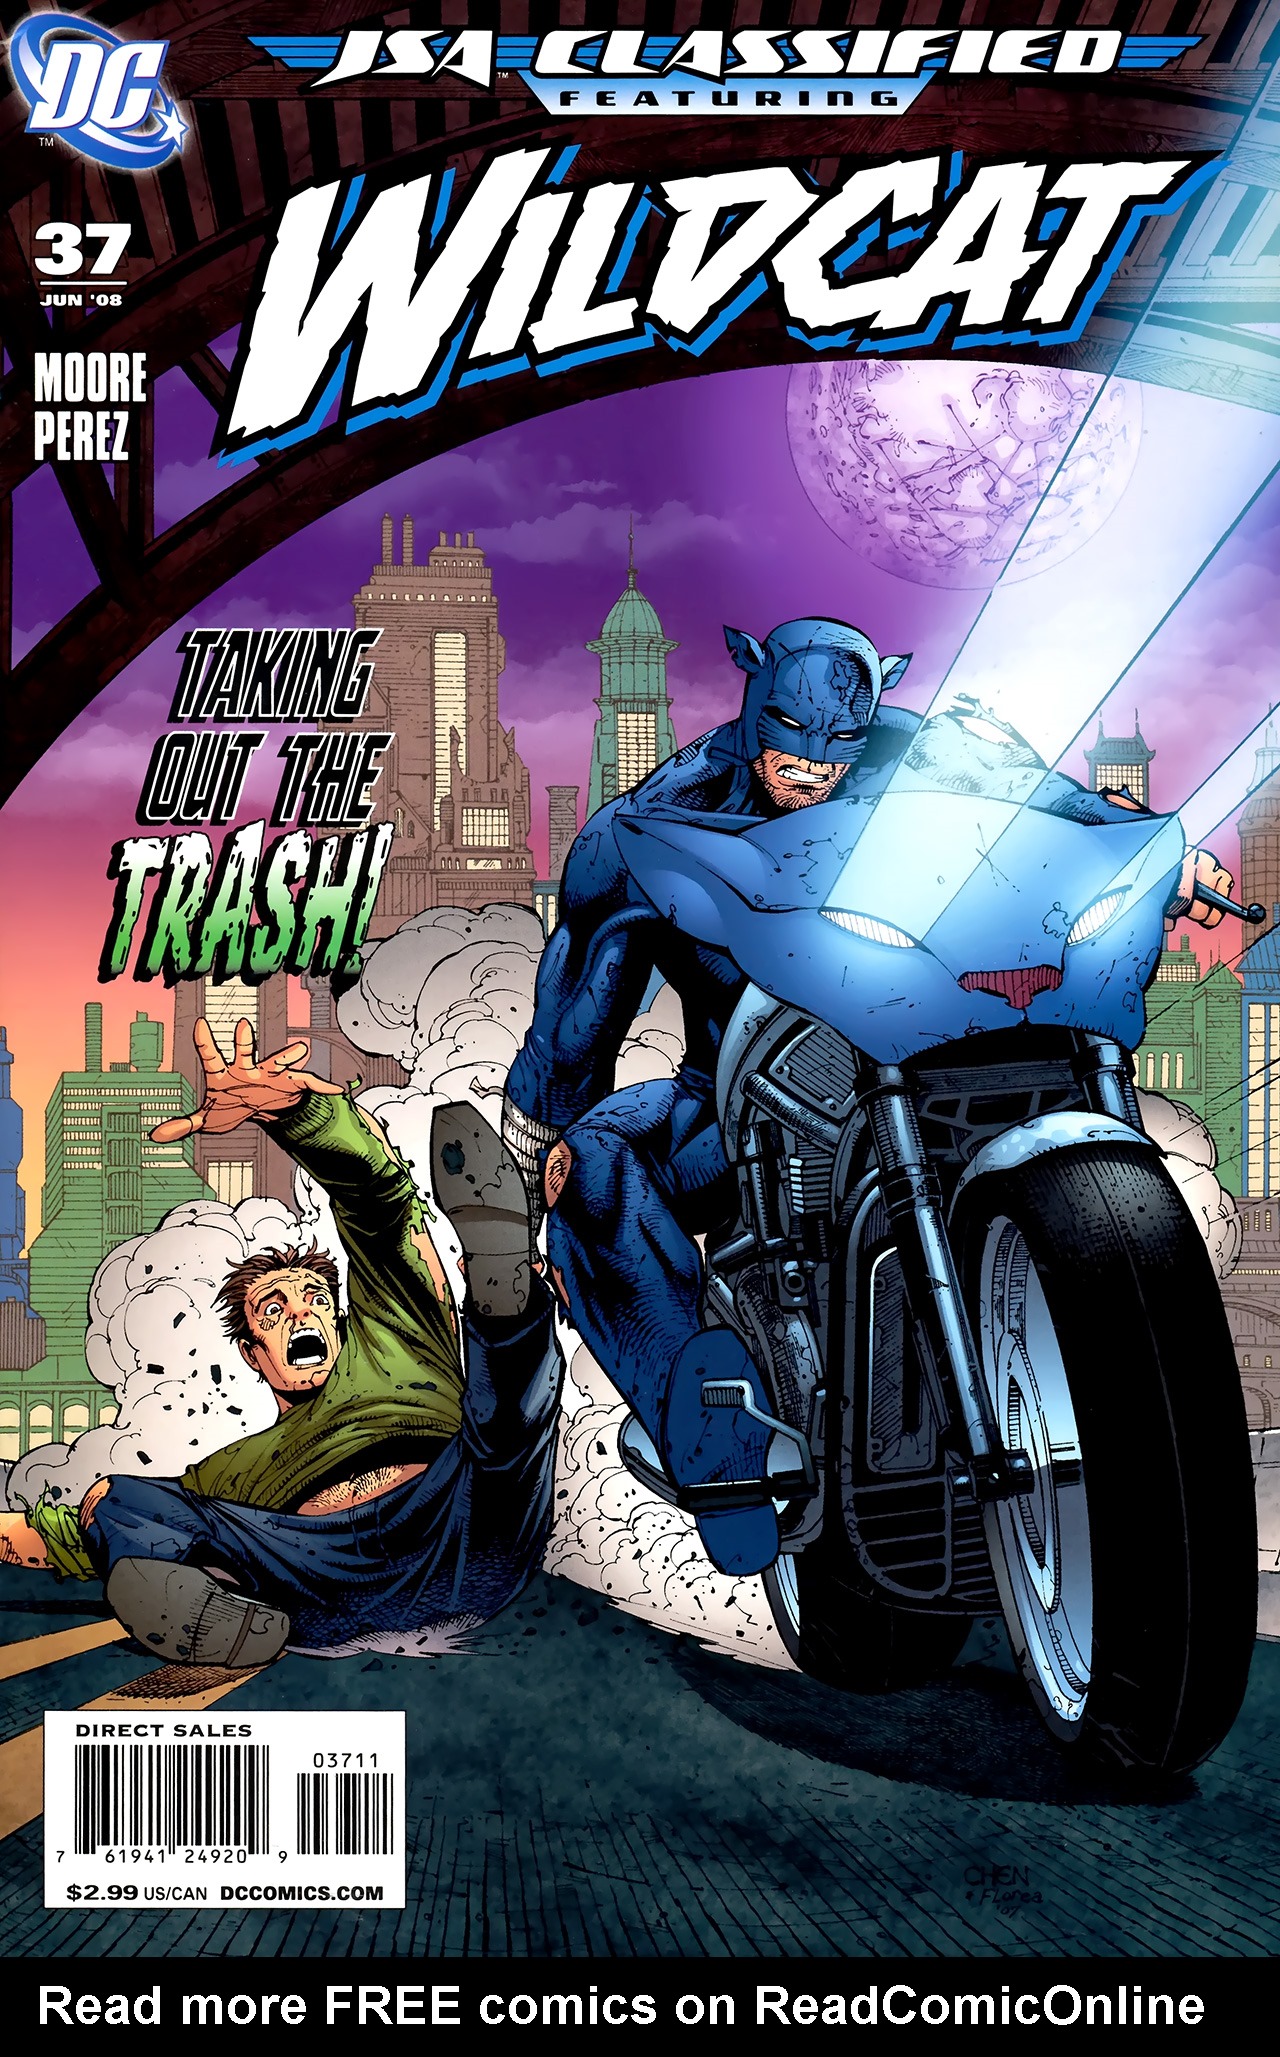 Read online JSA: Classified comic -  Issue #37 - 1